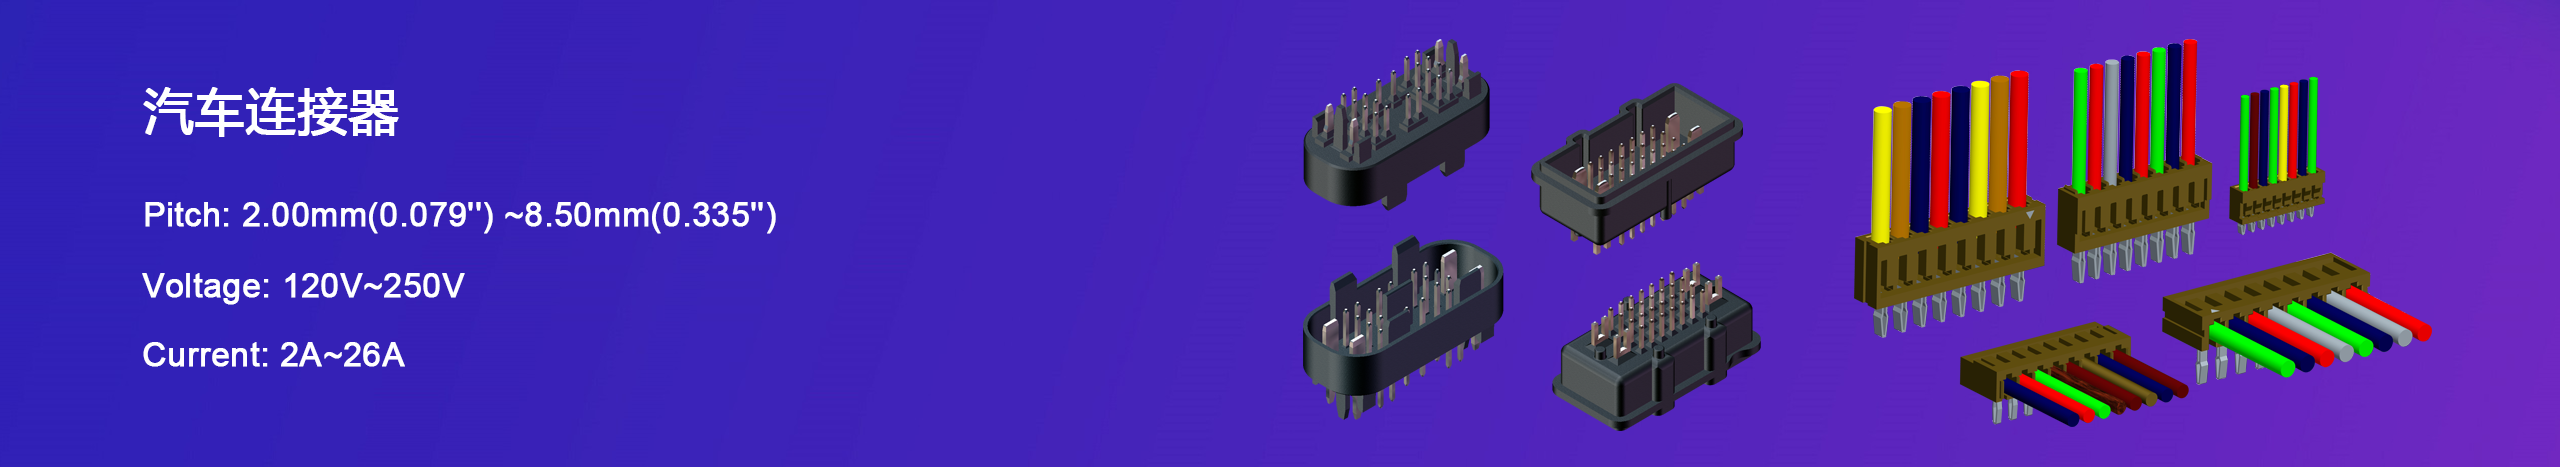 連接器,連接器廠家,Molex連接器,電腦周遍連接器,空中接頭連接器,線對板連接器,板對板連接,插板式連接器,排針,排母